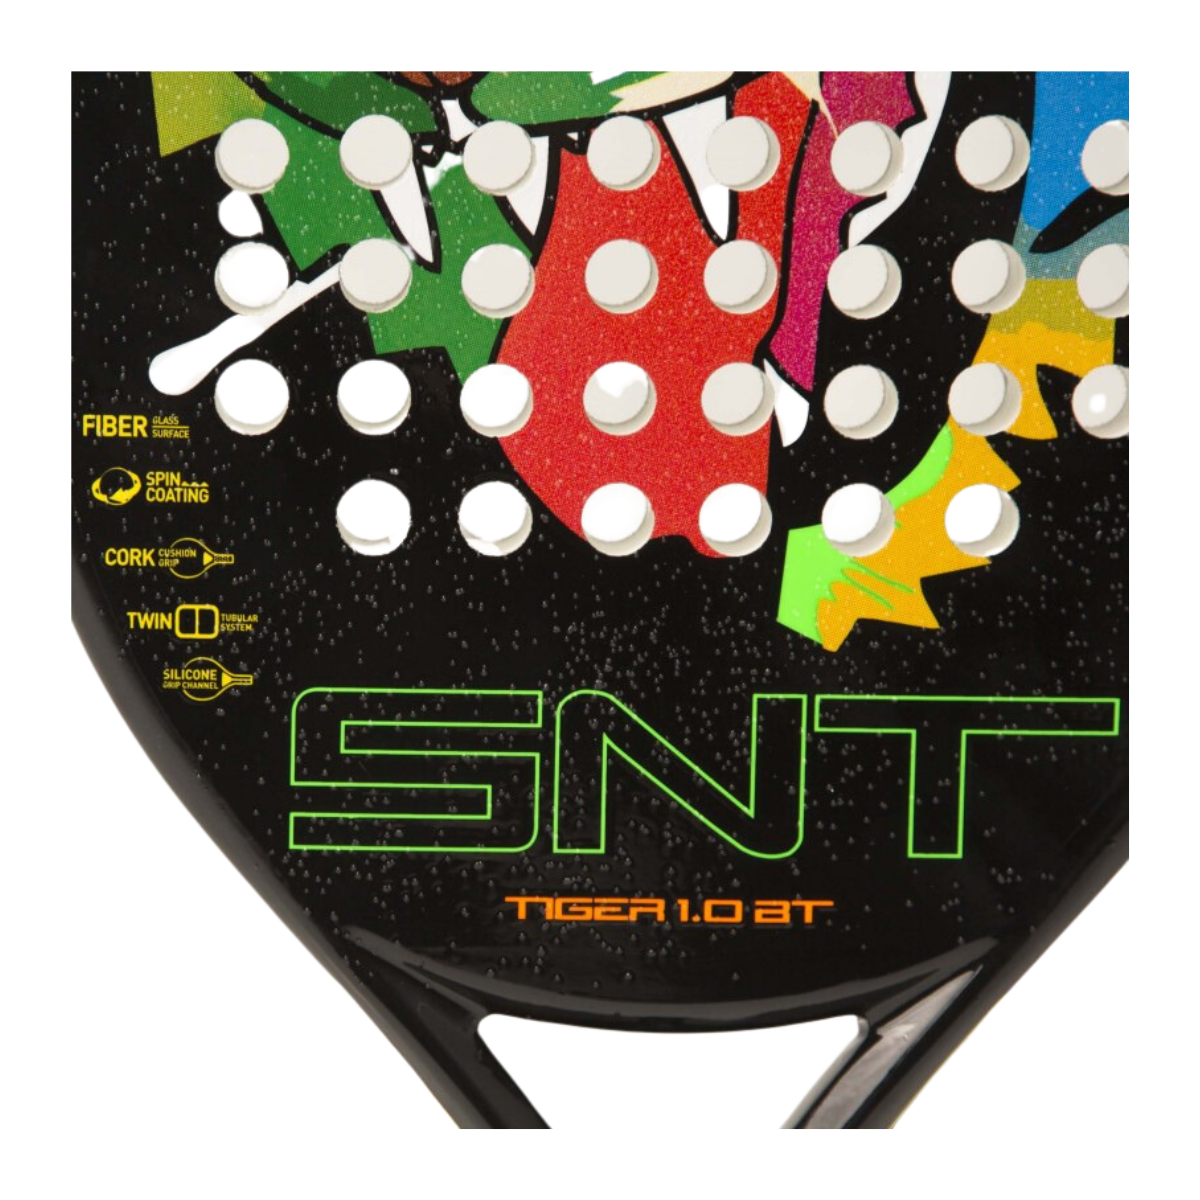 Drop Shot Tiger 1.0 BT Beach Tennis Racket